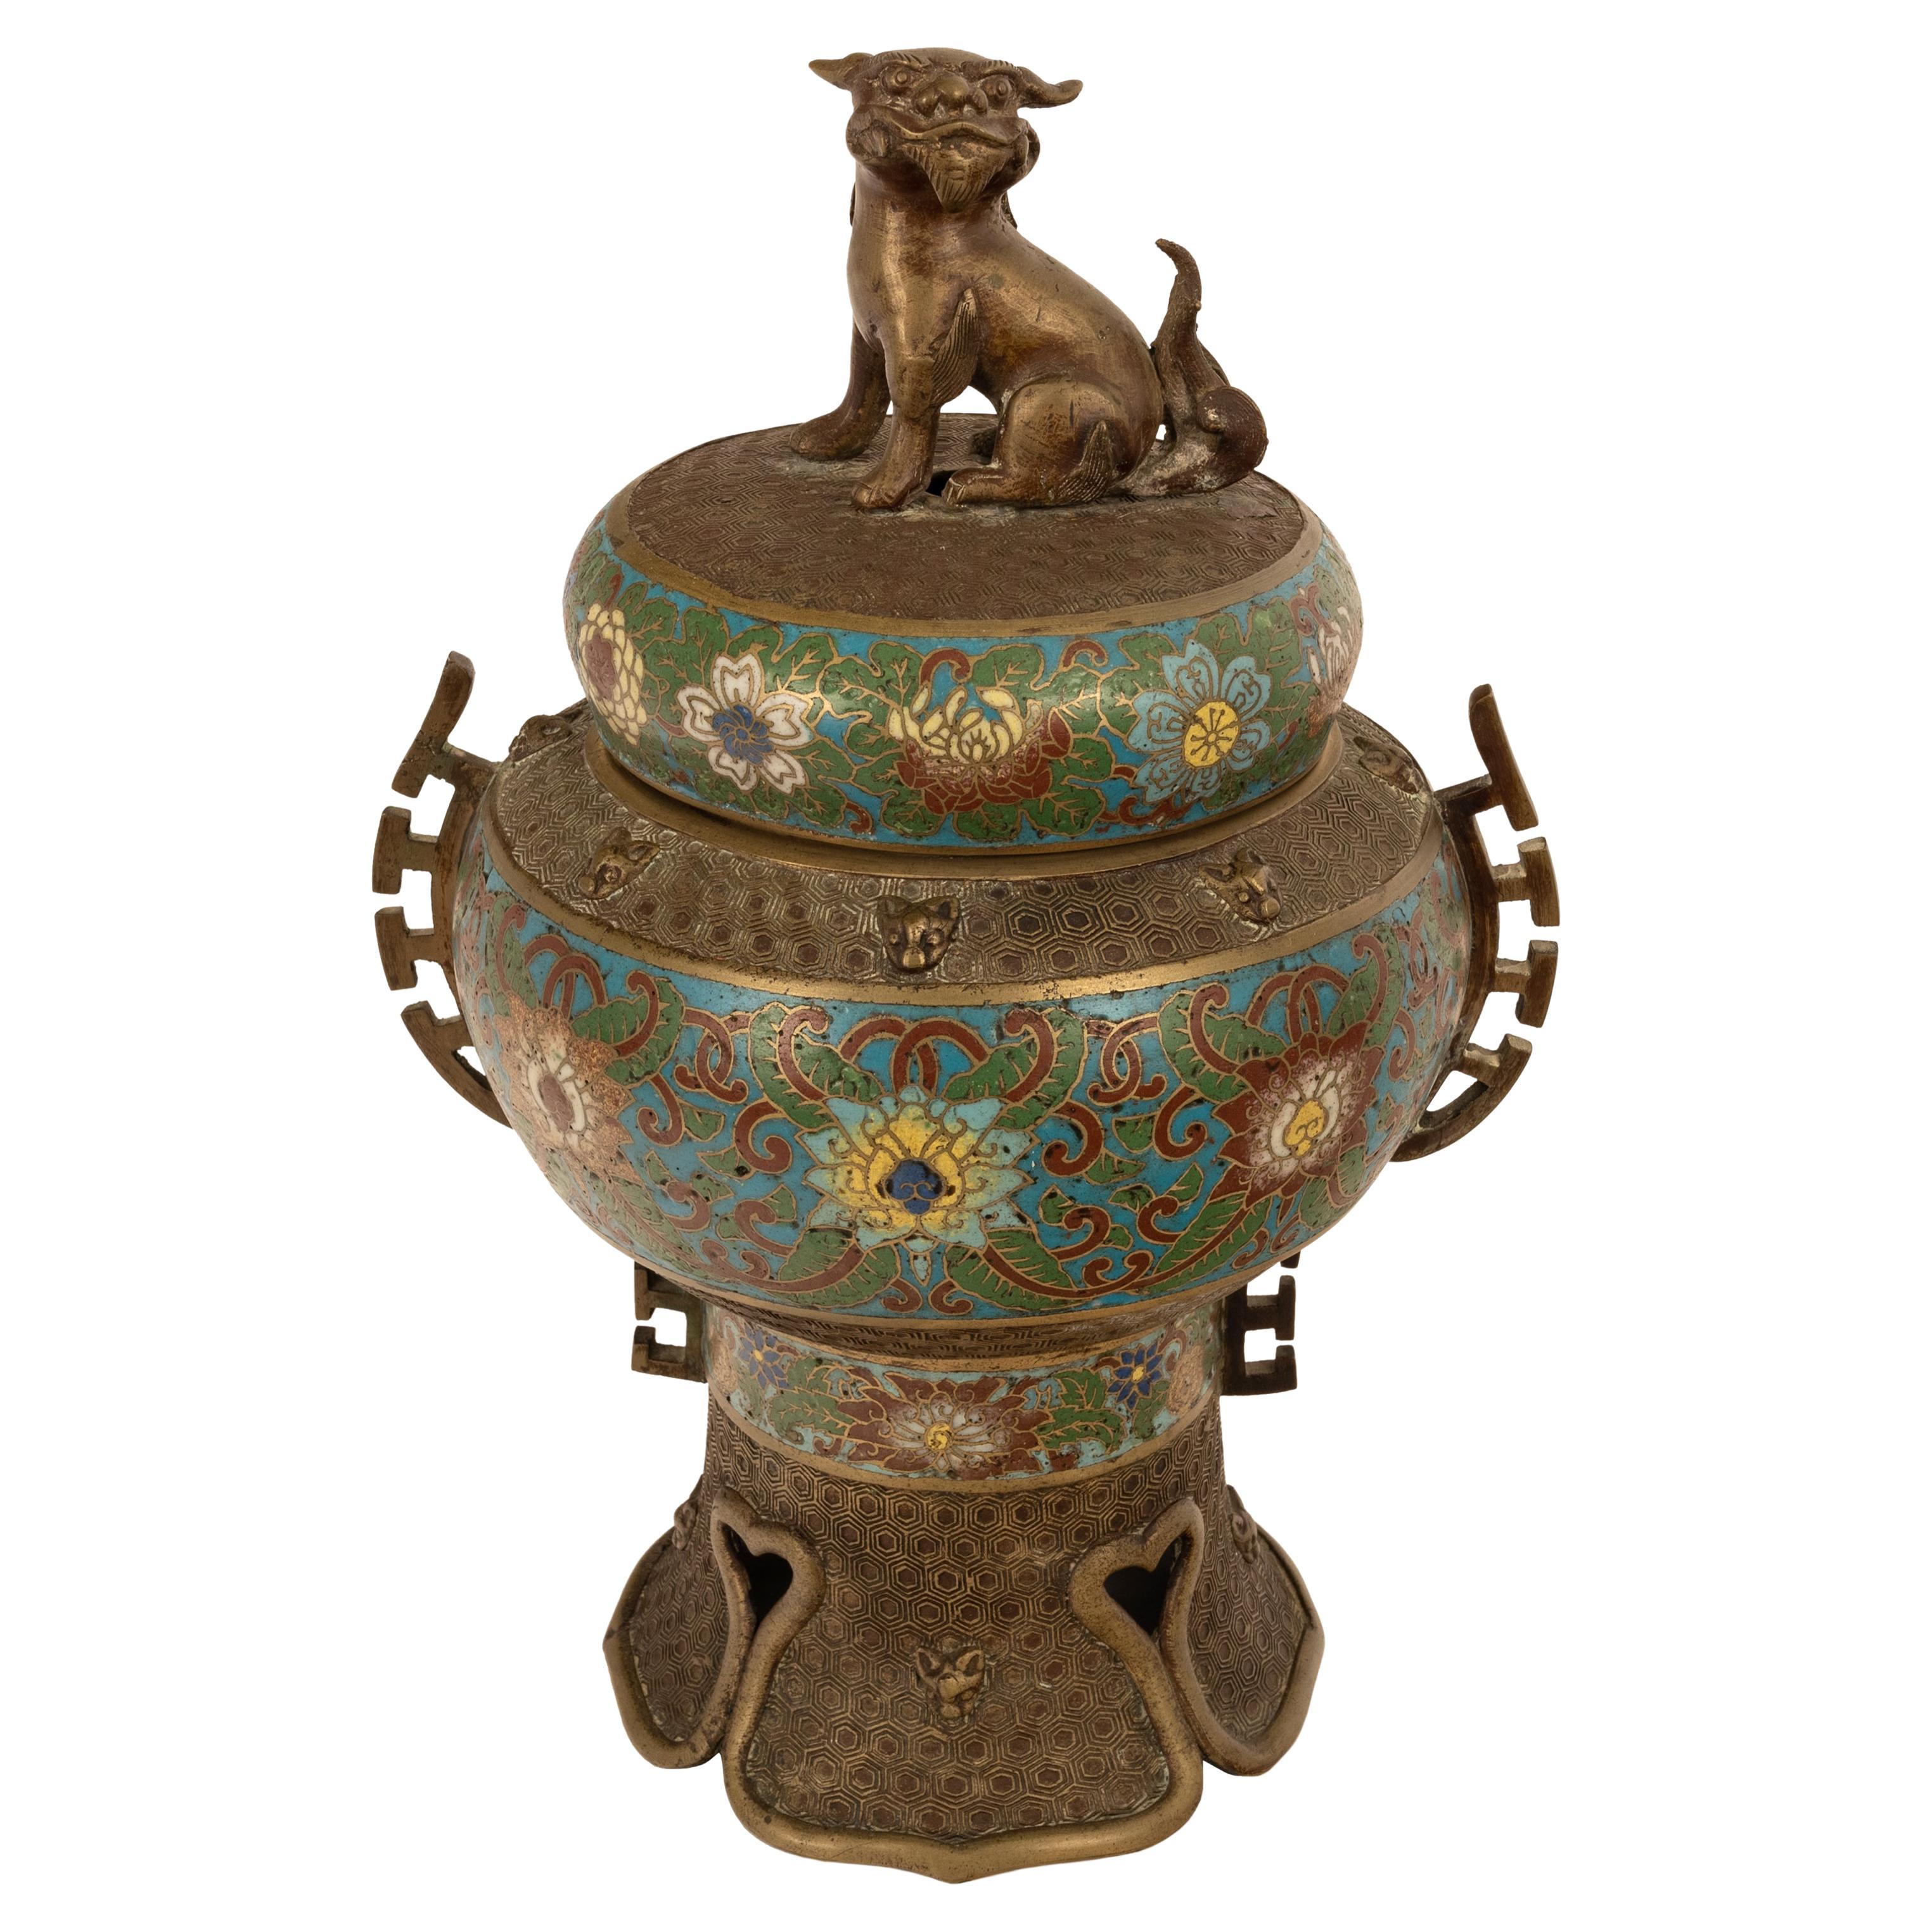 Un bon et grand encensoir chinois ancien de la dynastie Qing en bronze et cloisonné, vers 1900.
L'encensoir à couvercle présente un lion chinois (Shi) sur le couvercle, le corps et le couvercle sont incrustés de motifs floraux en cloisonné, les